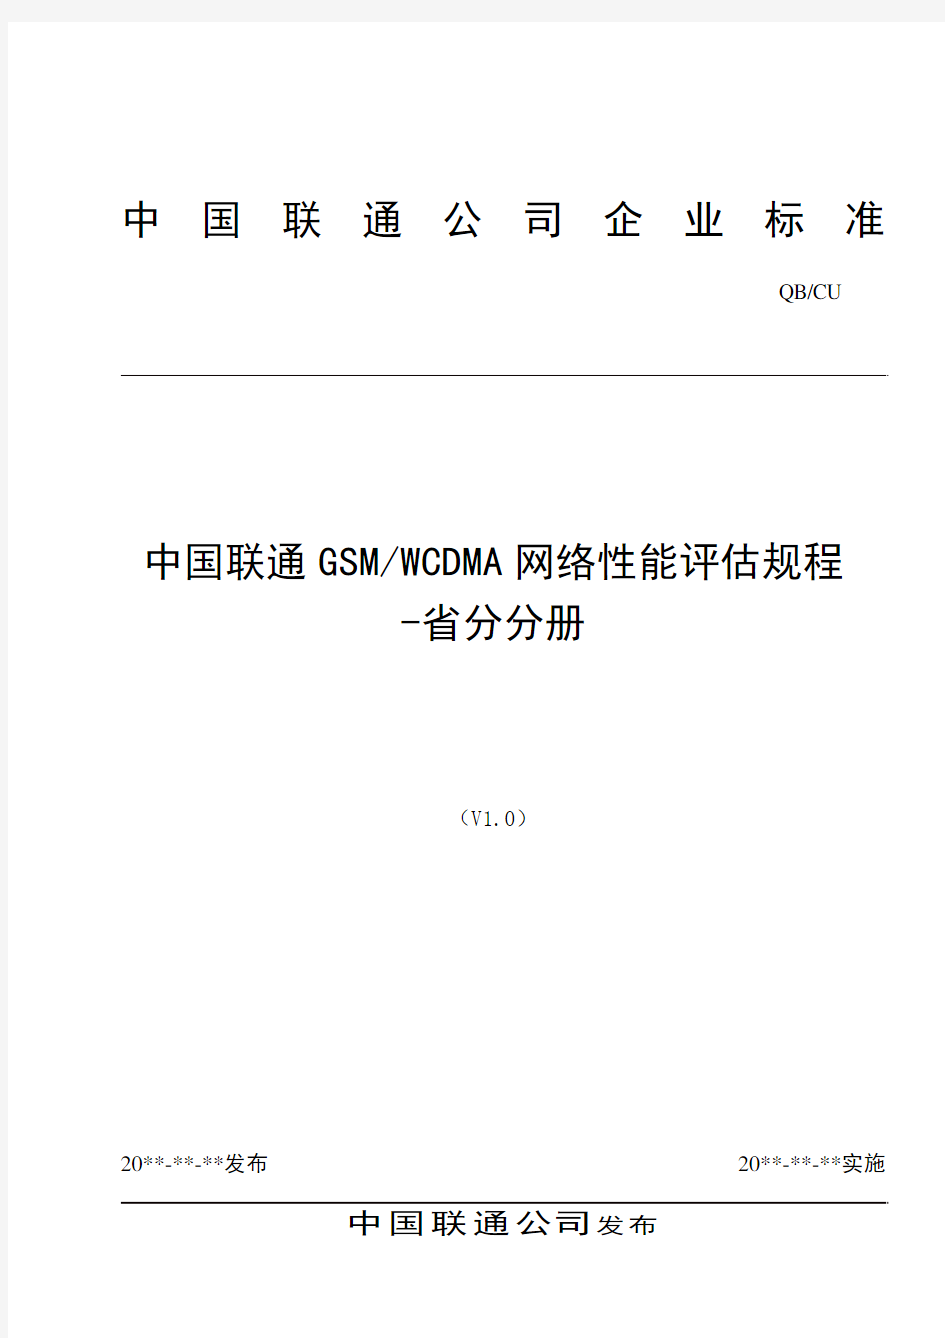 中国联通GSMWCDMA网络性能评估规程V1[1].0-0315